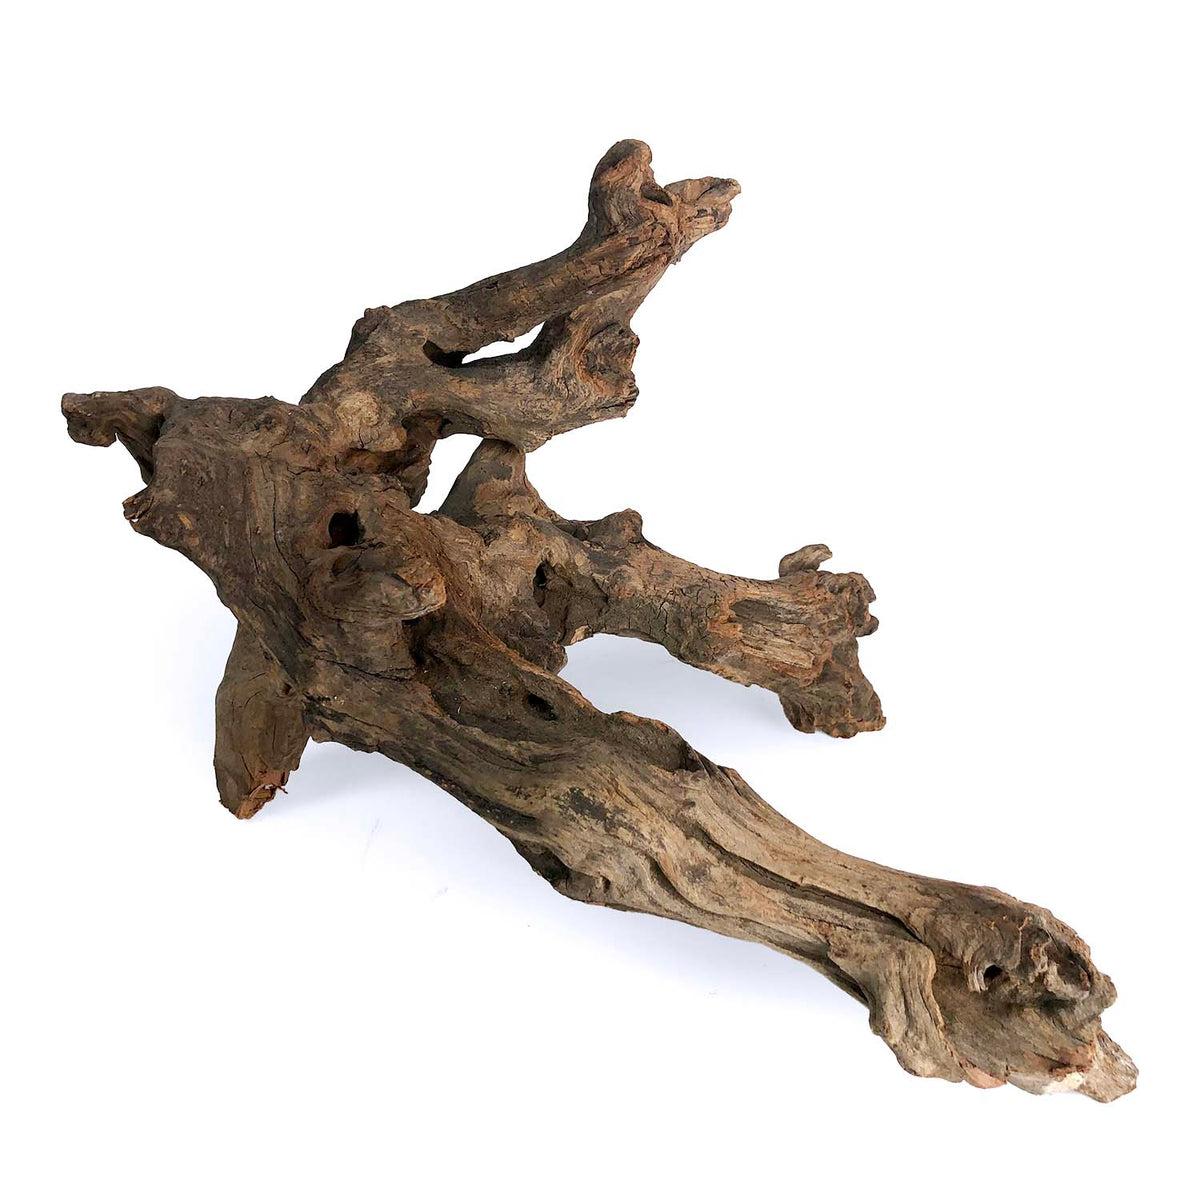 Products – Sierra Aquatic Driftwood